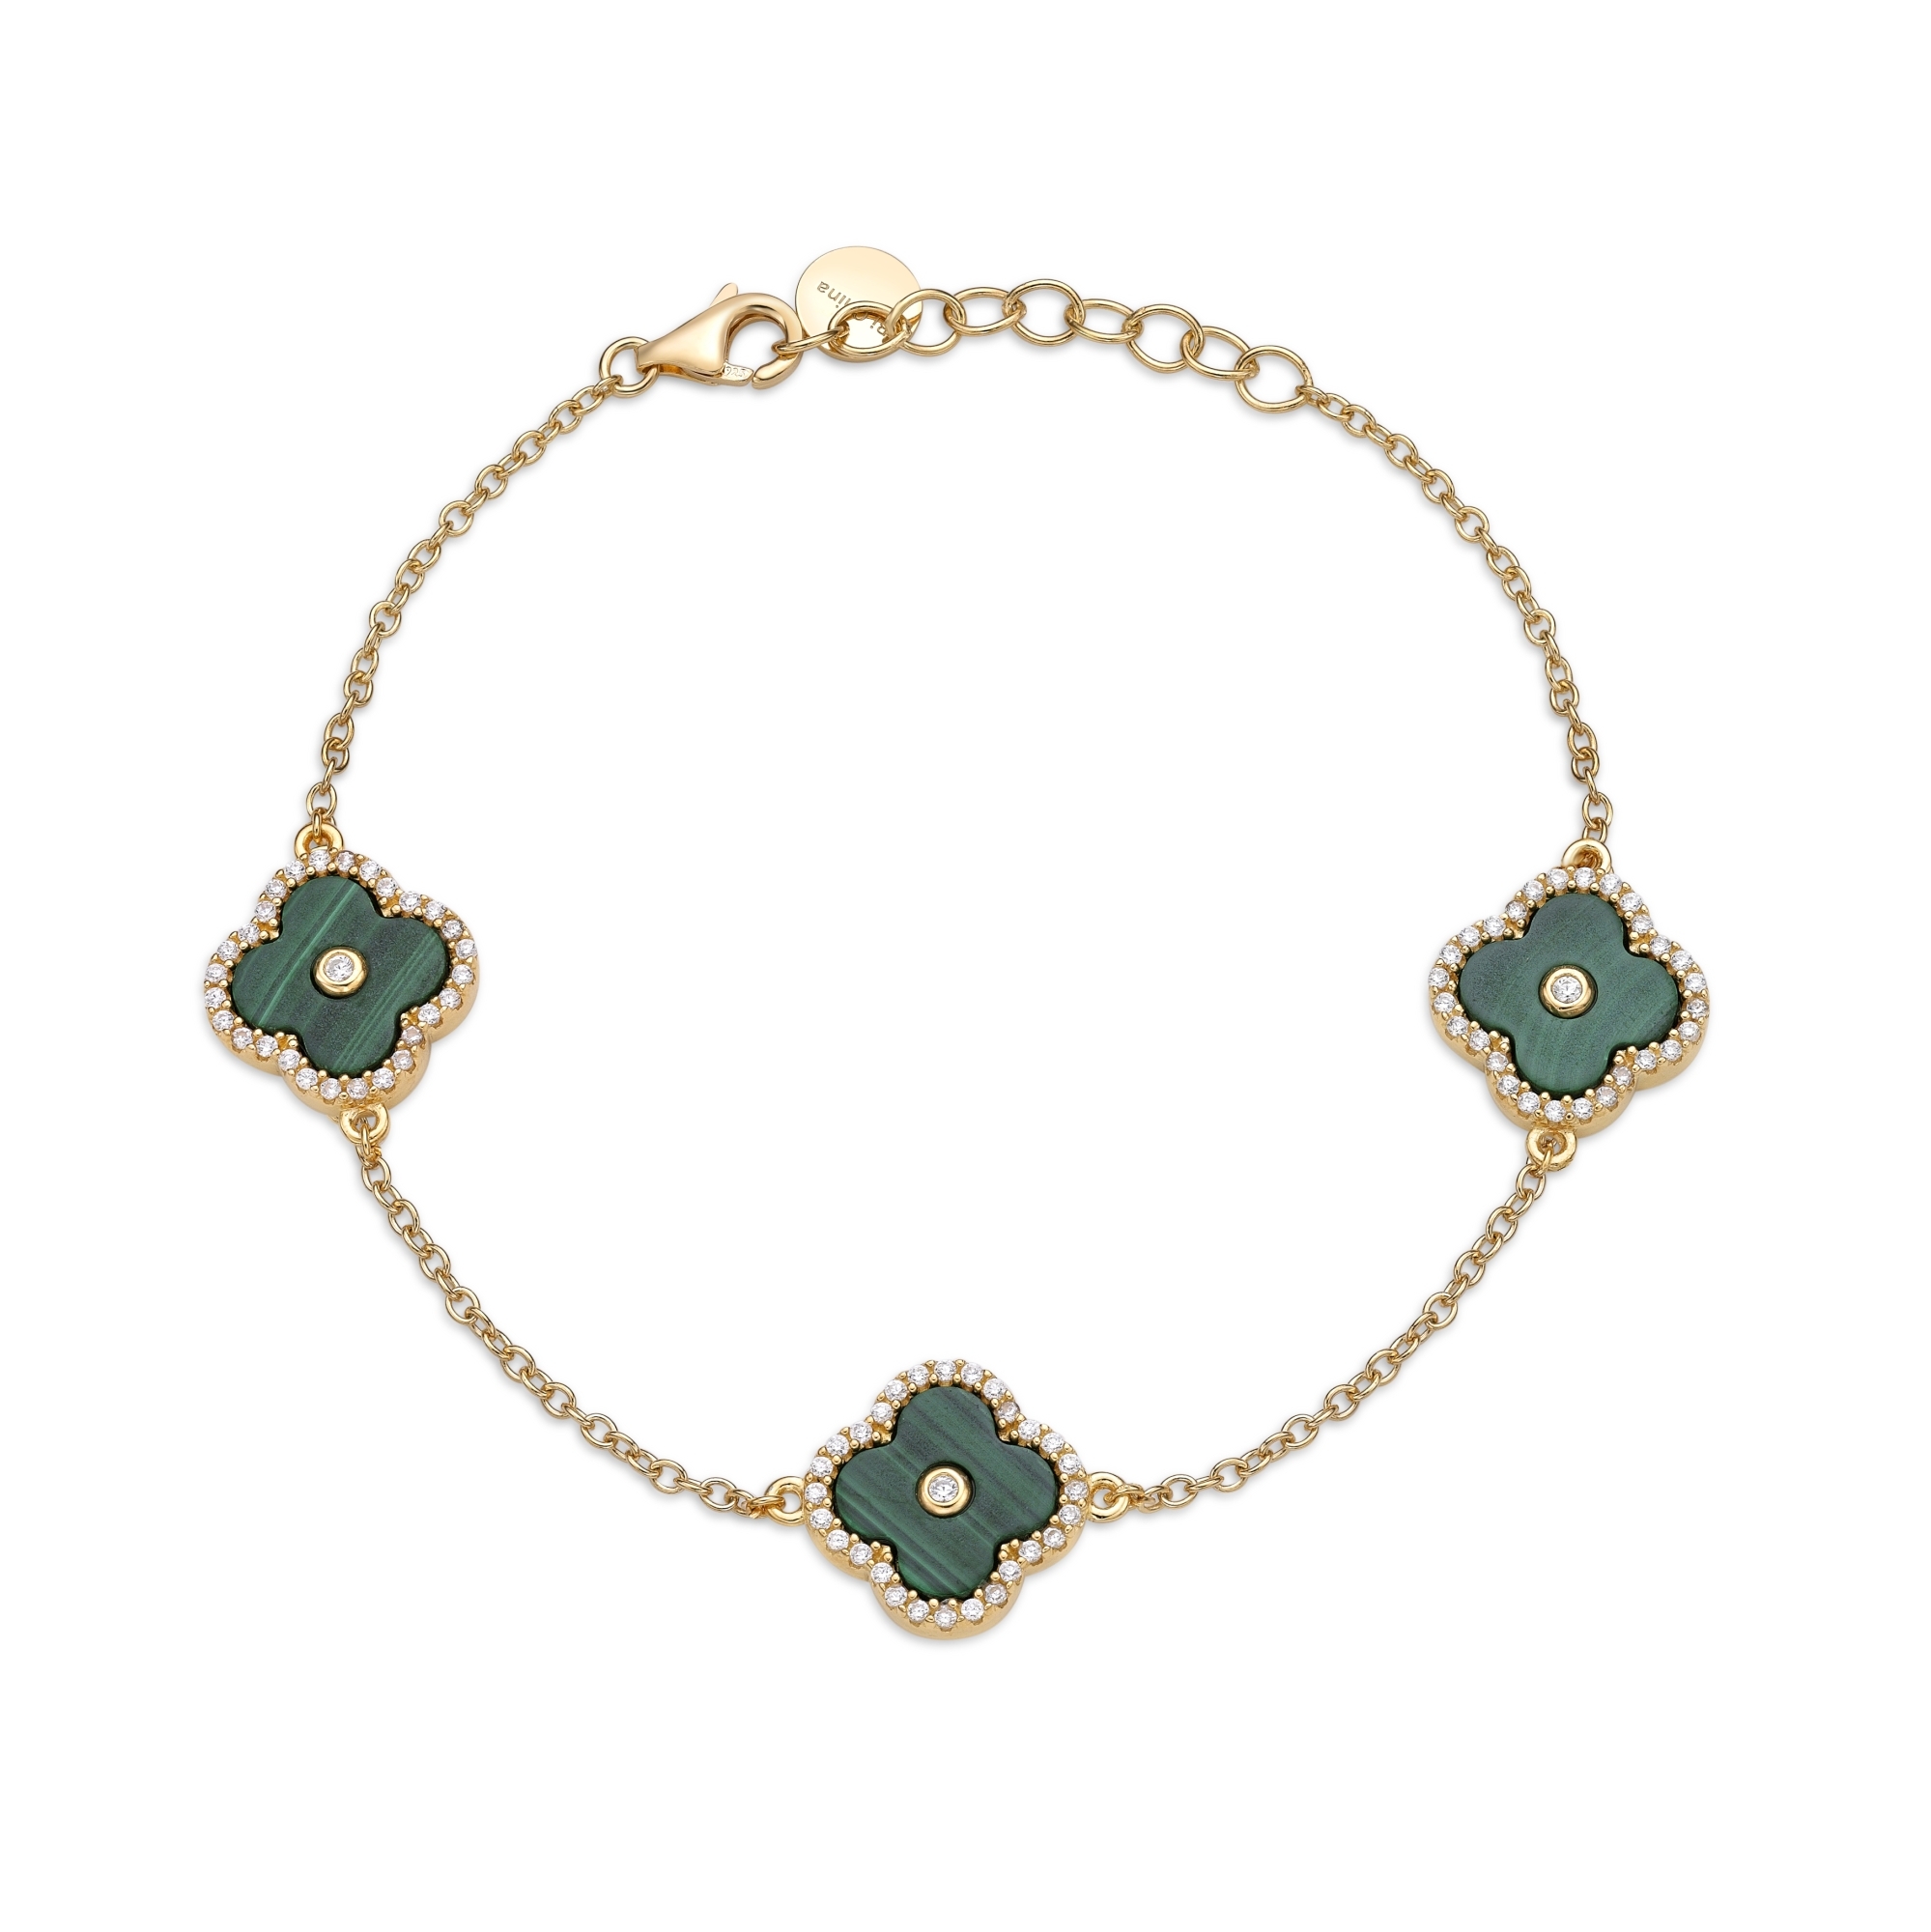 50974-bracelet-fashion-jewelry-sterling-silver-50974-3.jpg